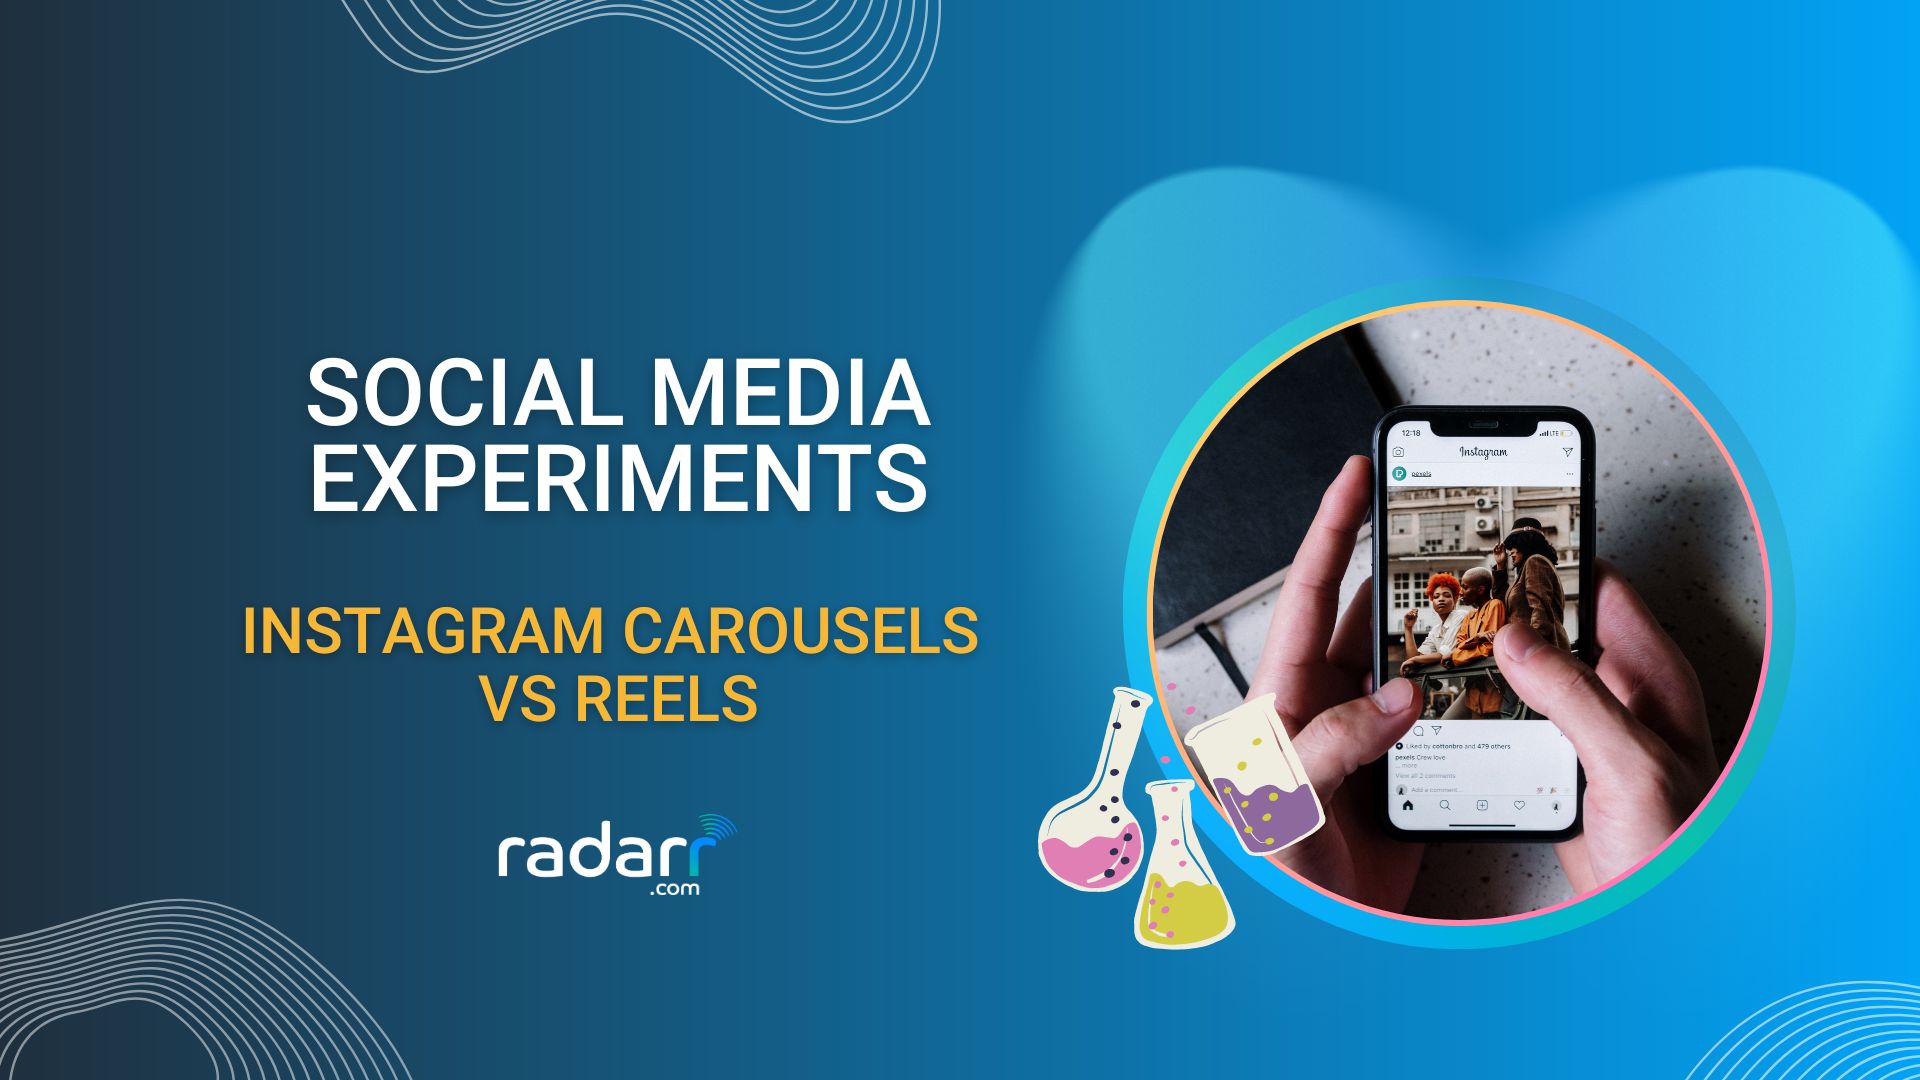 instagram carousels vs reels for social media marketing